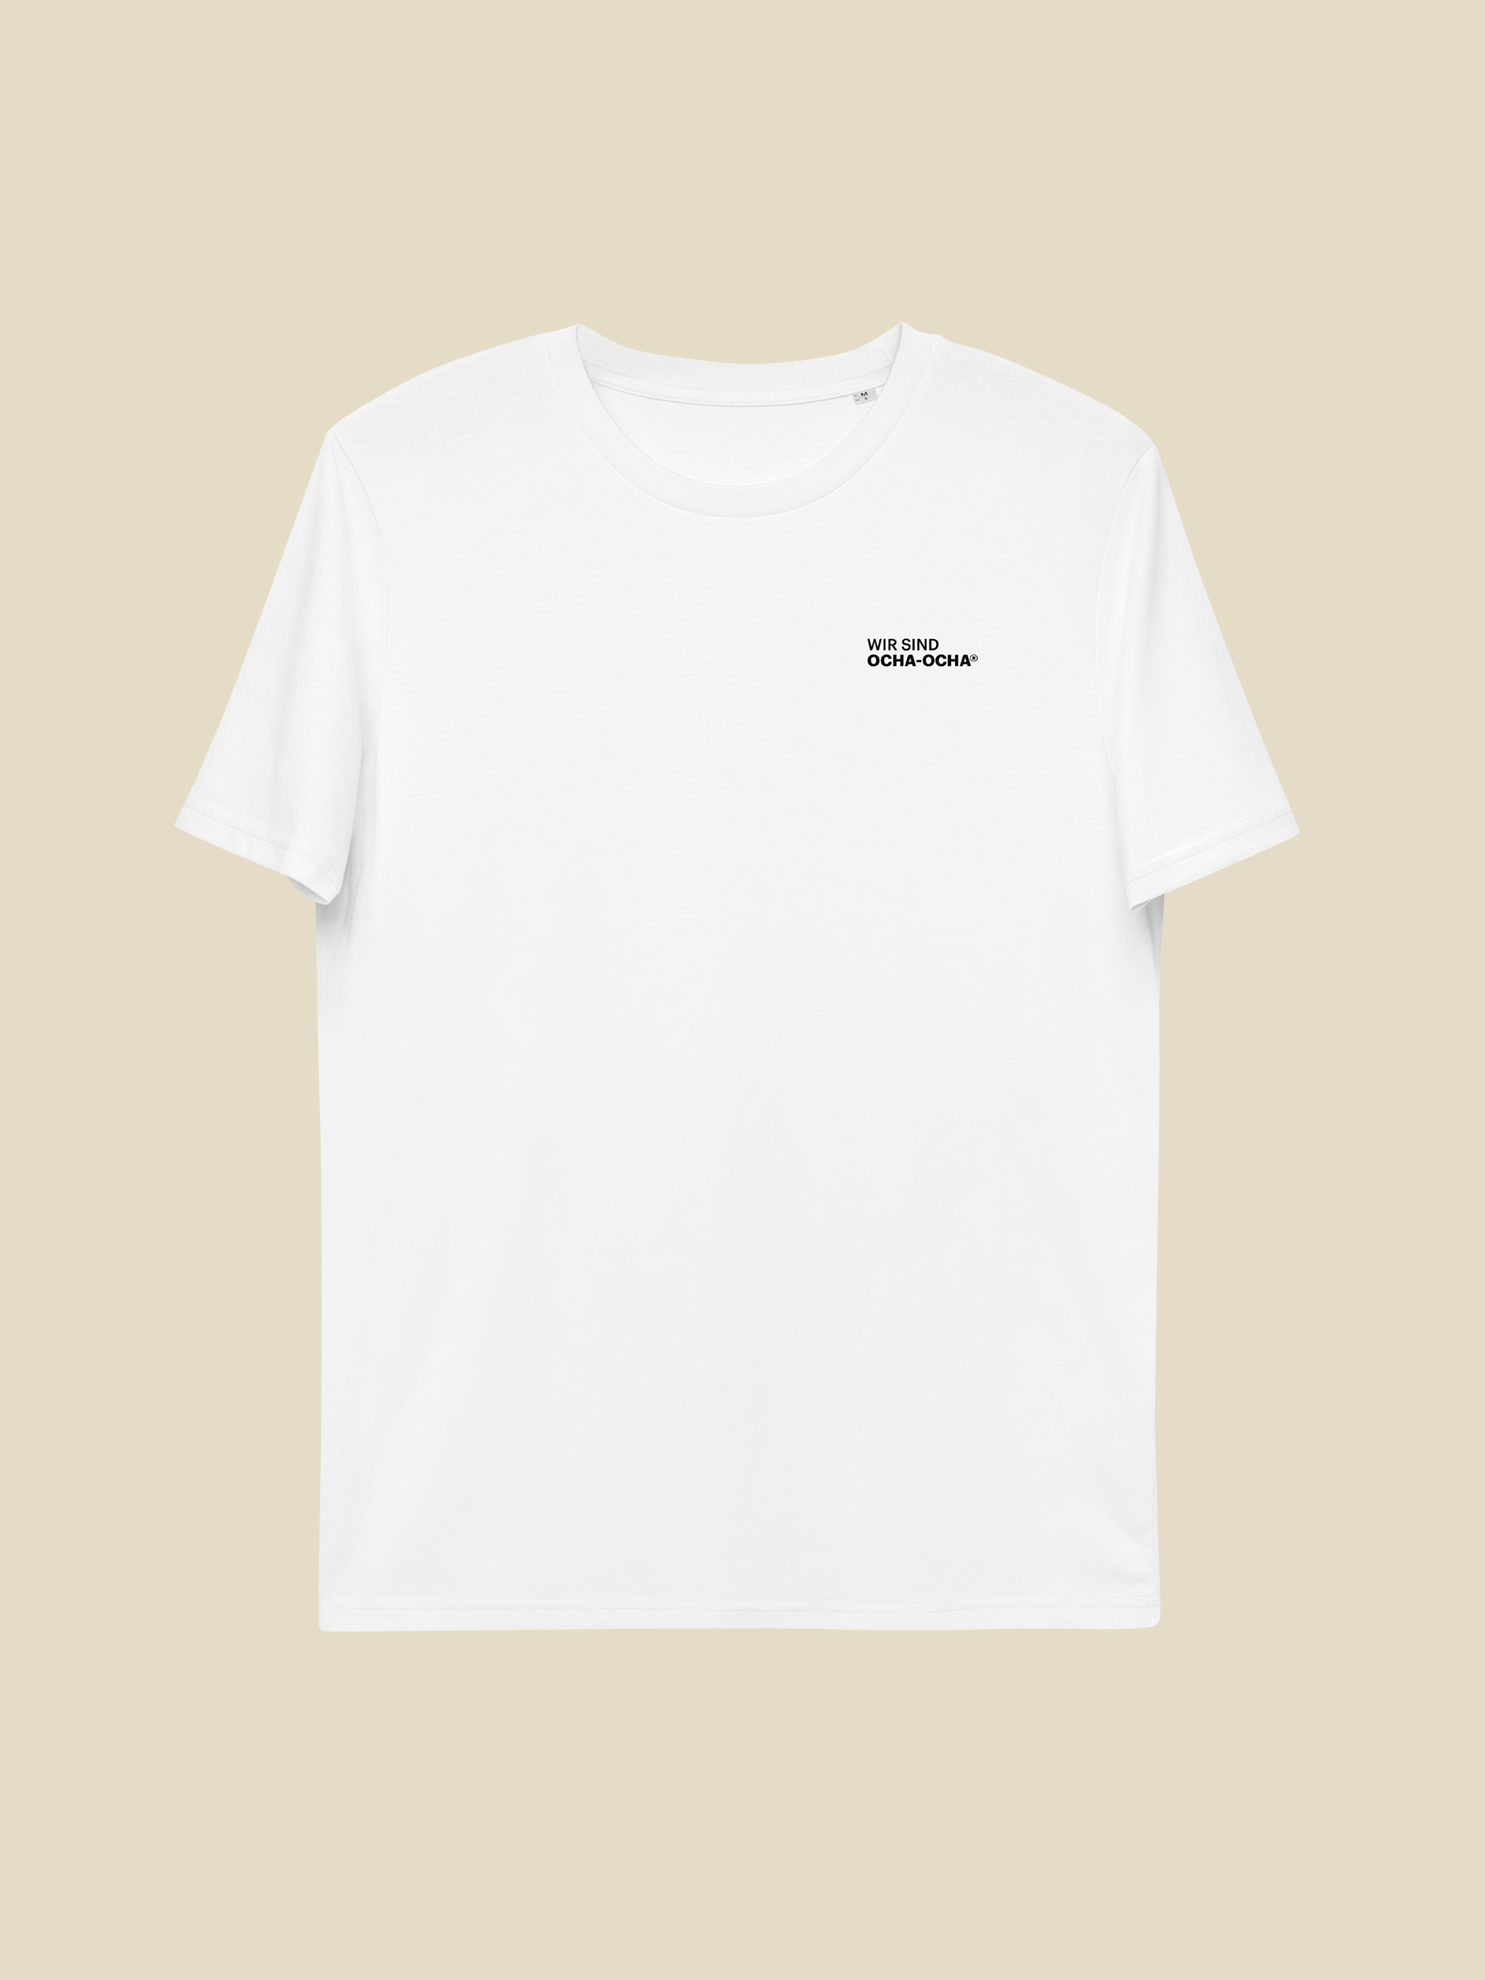 T-Shirt – Ocha-Ocha® Gründerteam Edition